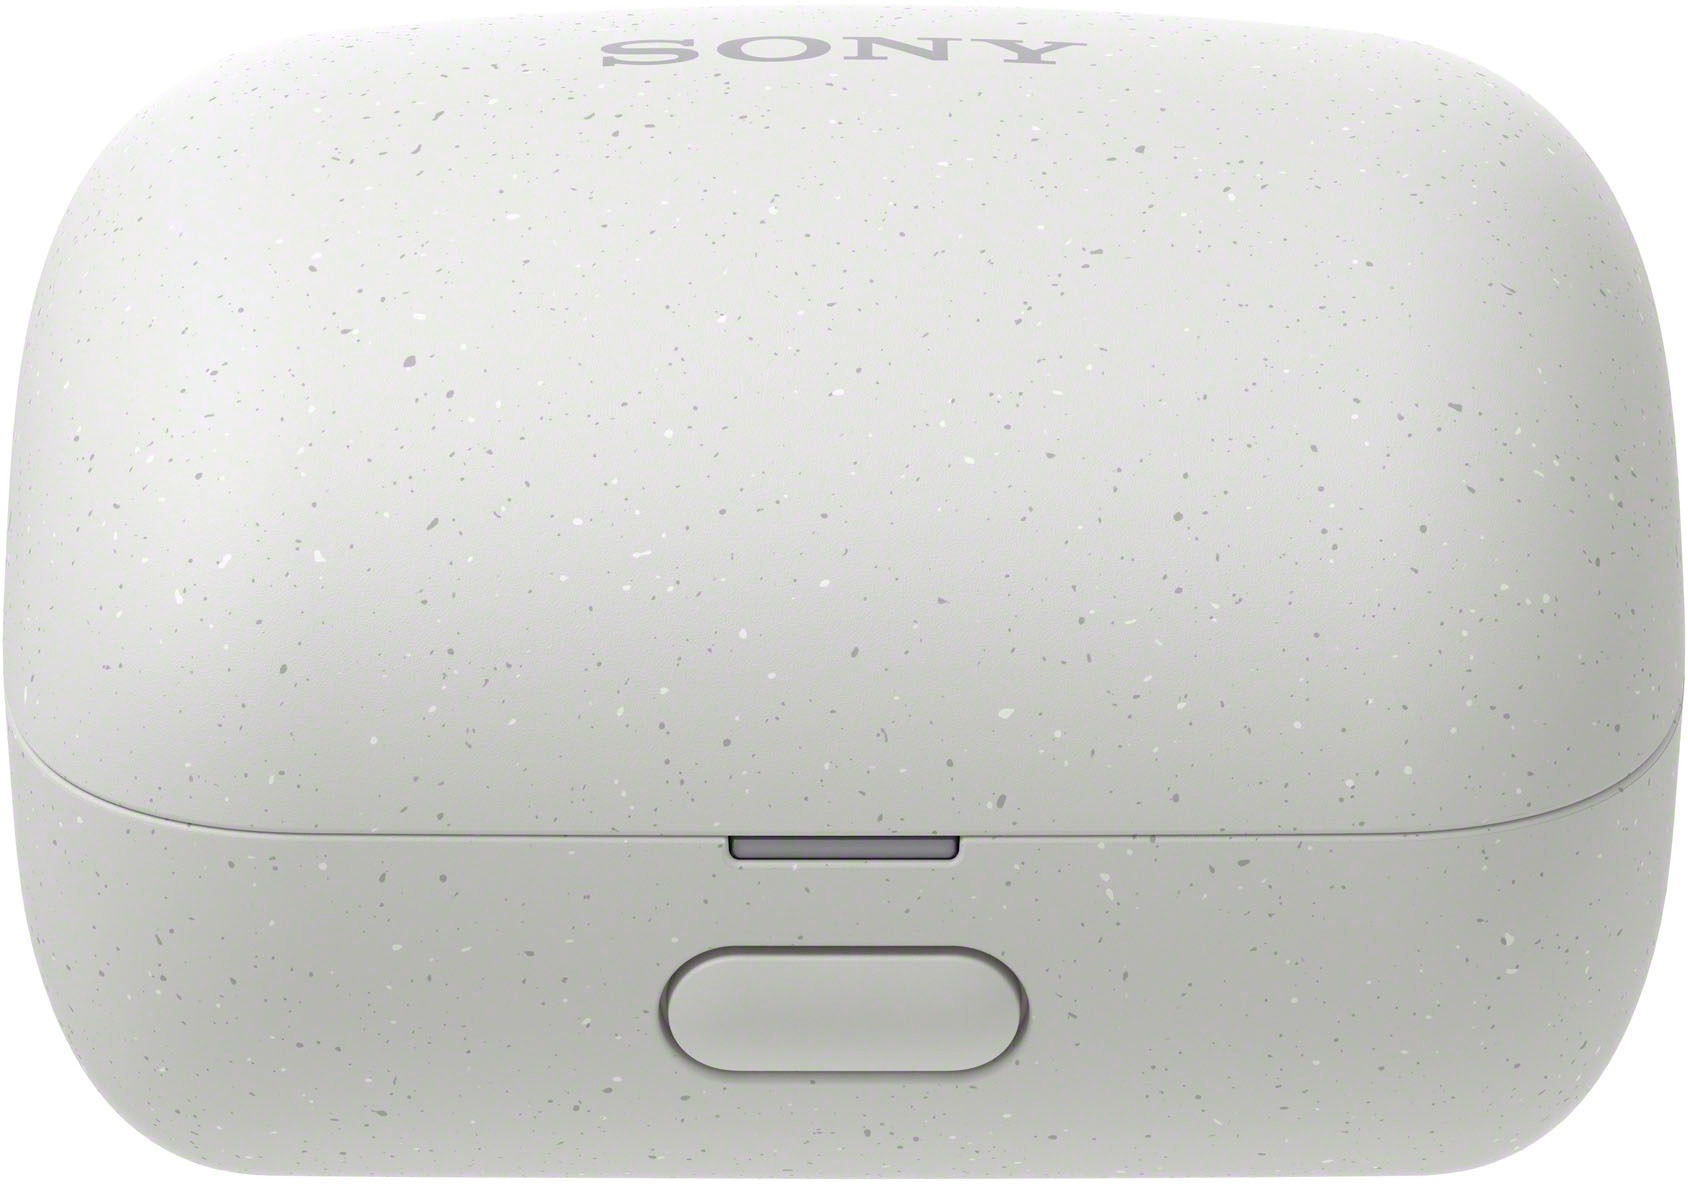 Boitier des Sony Linkbuds WF-L900